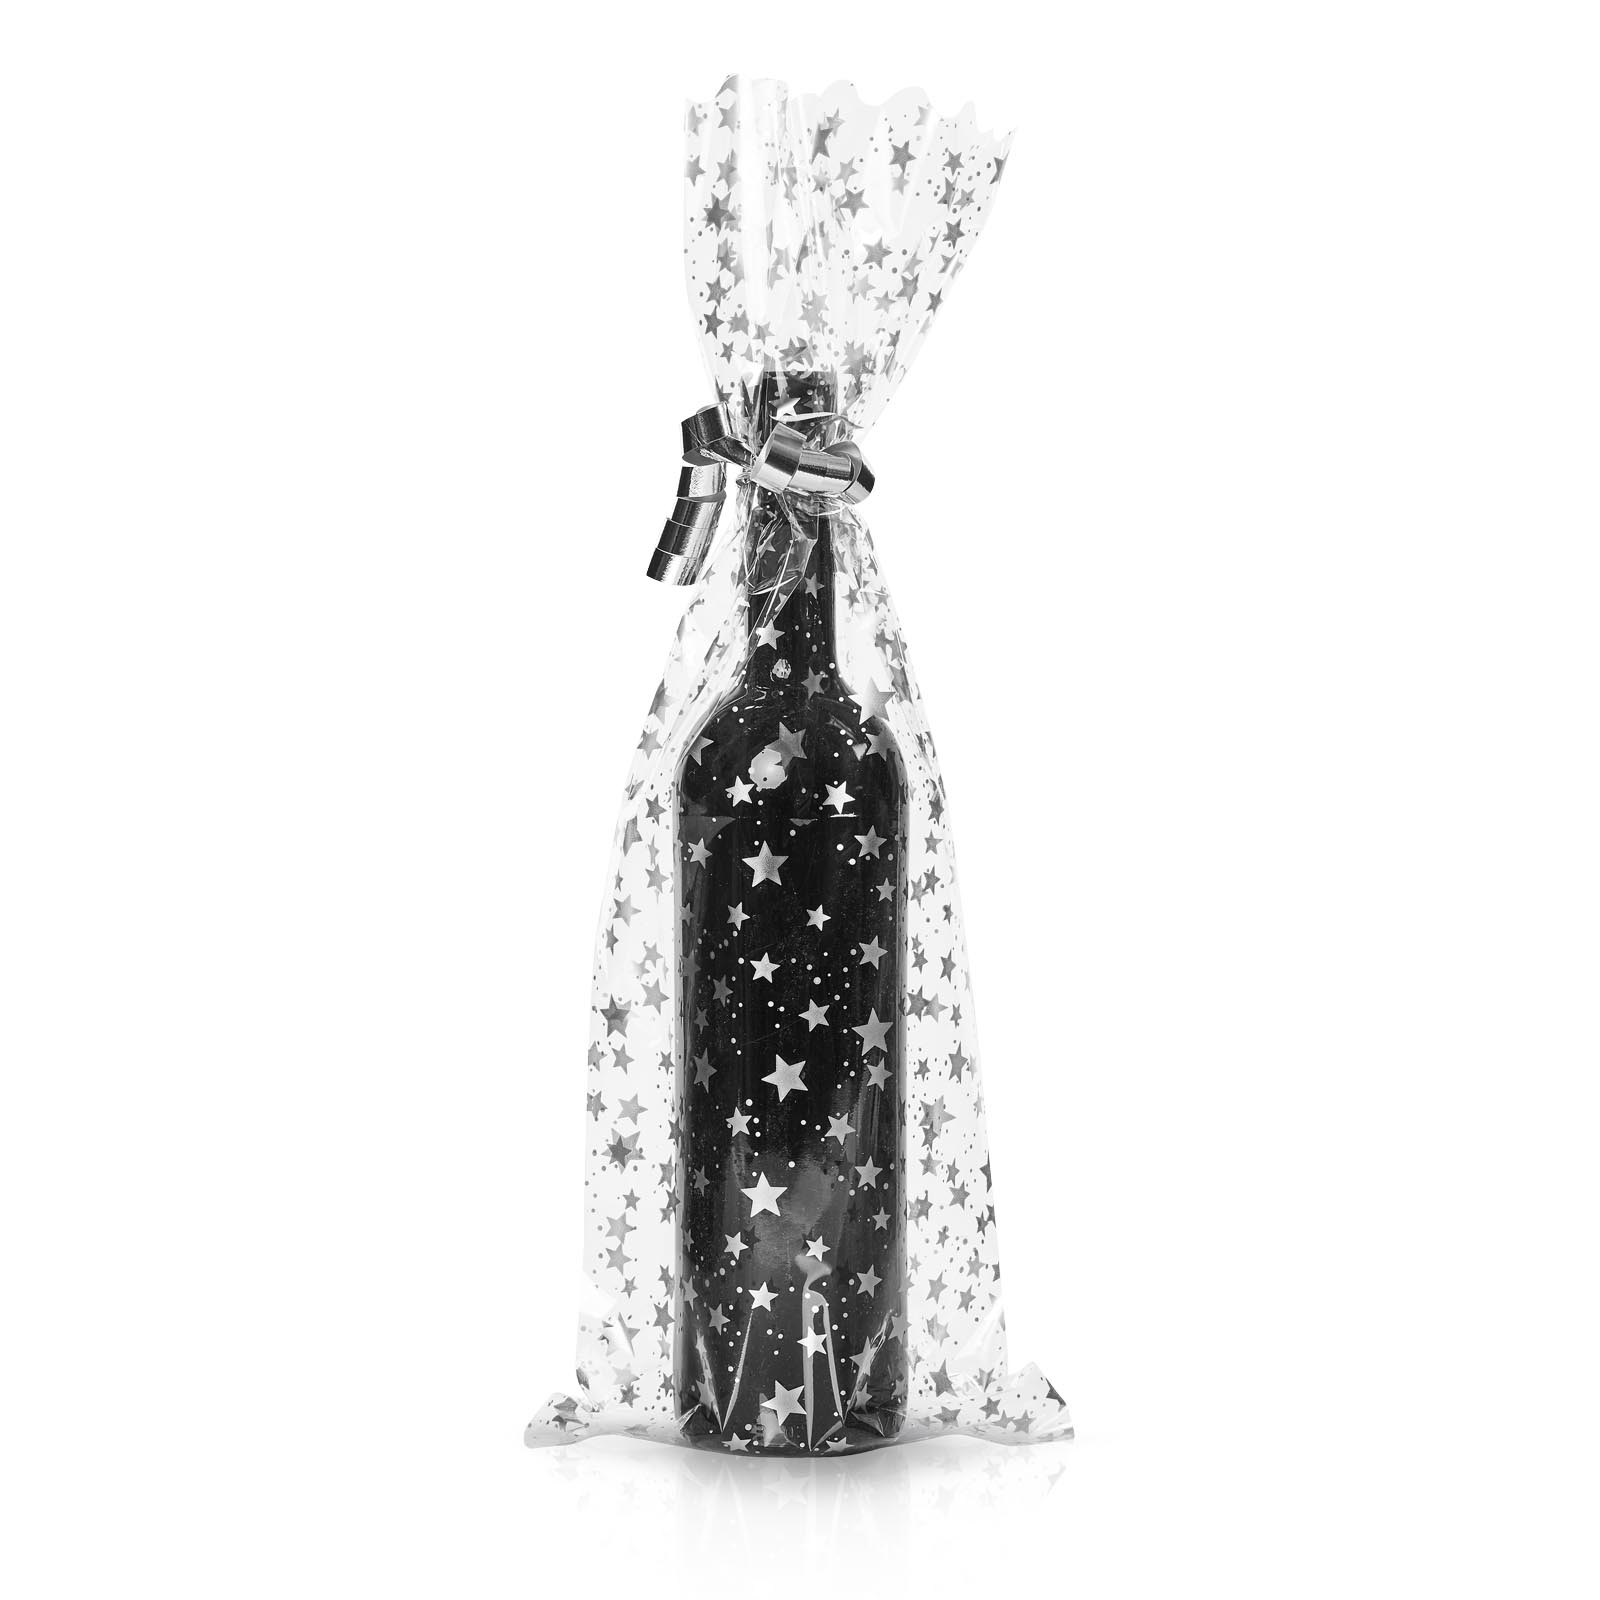 Flaschenbeut 1er Sterne silber 500x180mm,35µ,Wein/Sektflasche